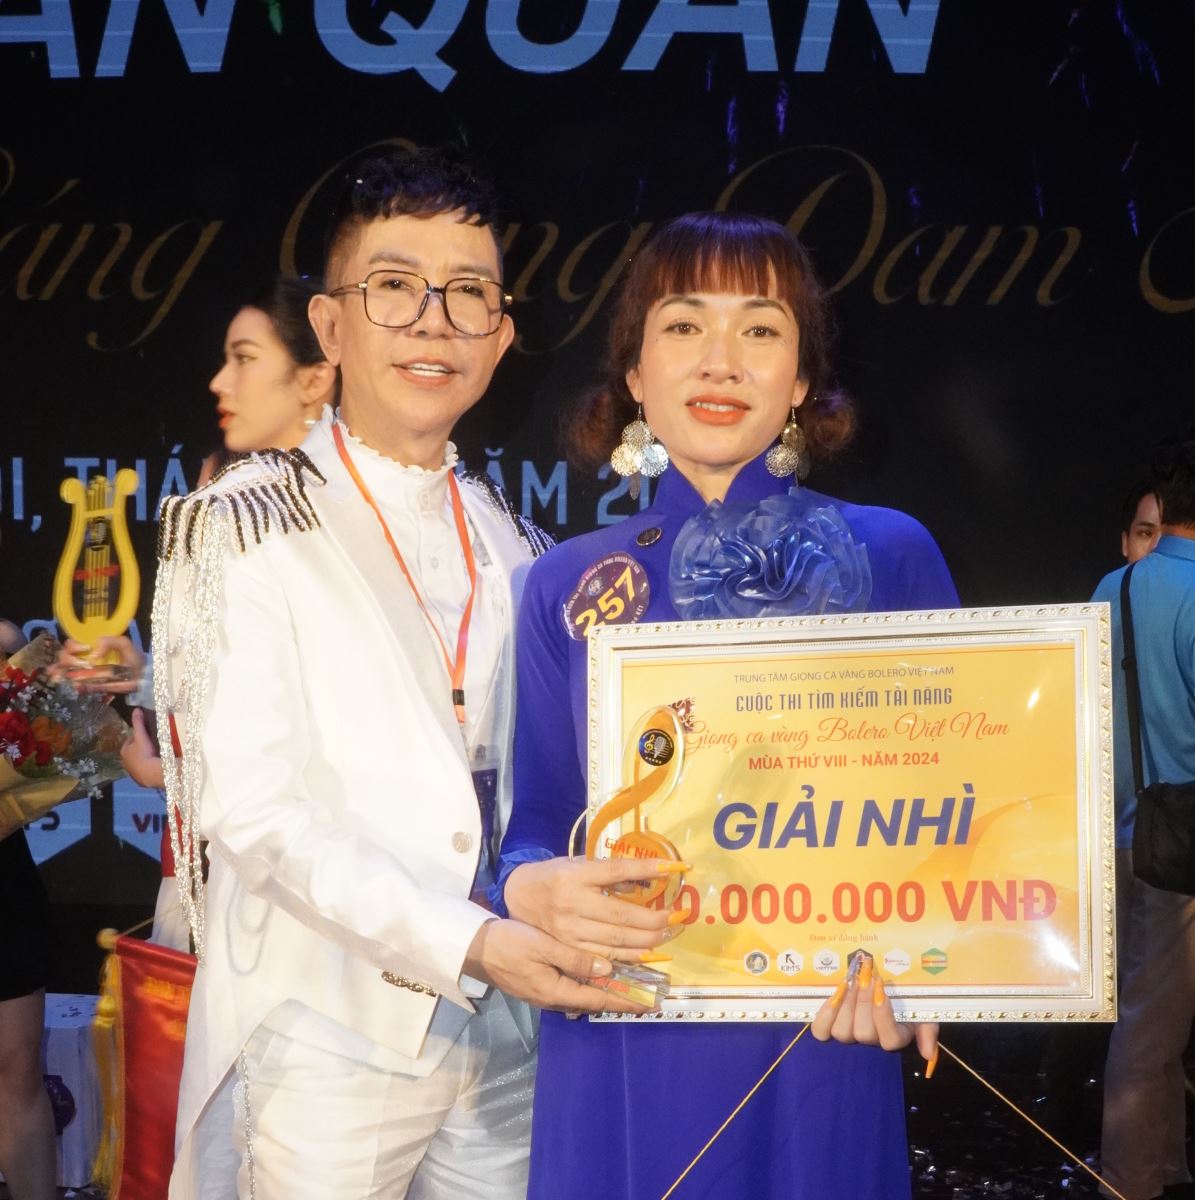 Nguyễn Thị Thu xuất sắc giành giải Nhì tại Giọng ca Vàng Bolero Việt Nam